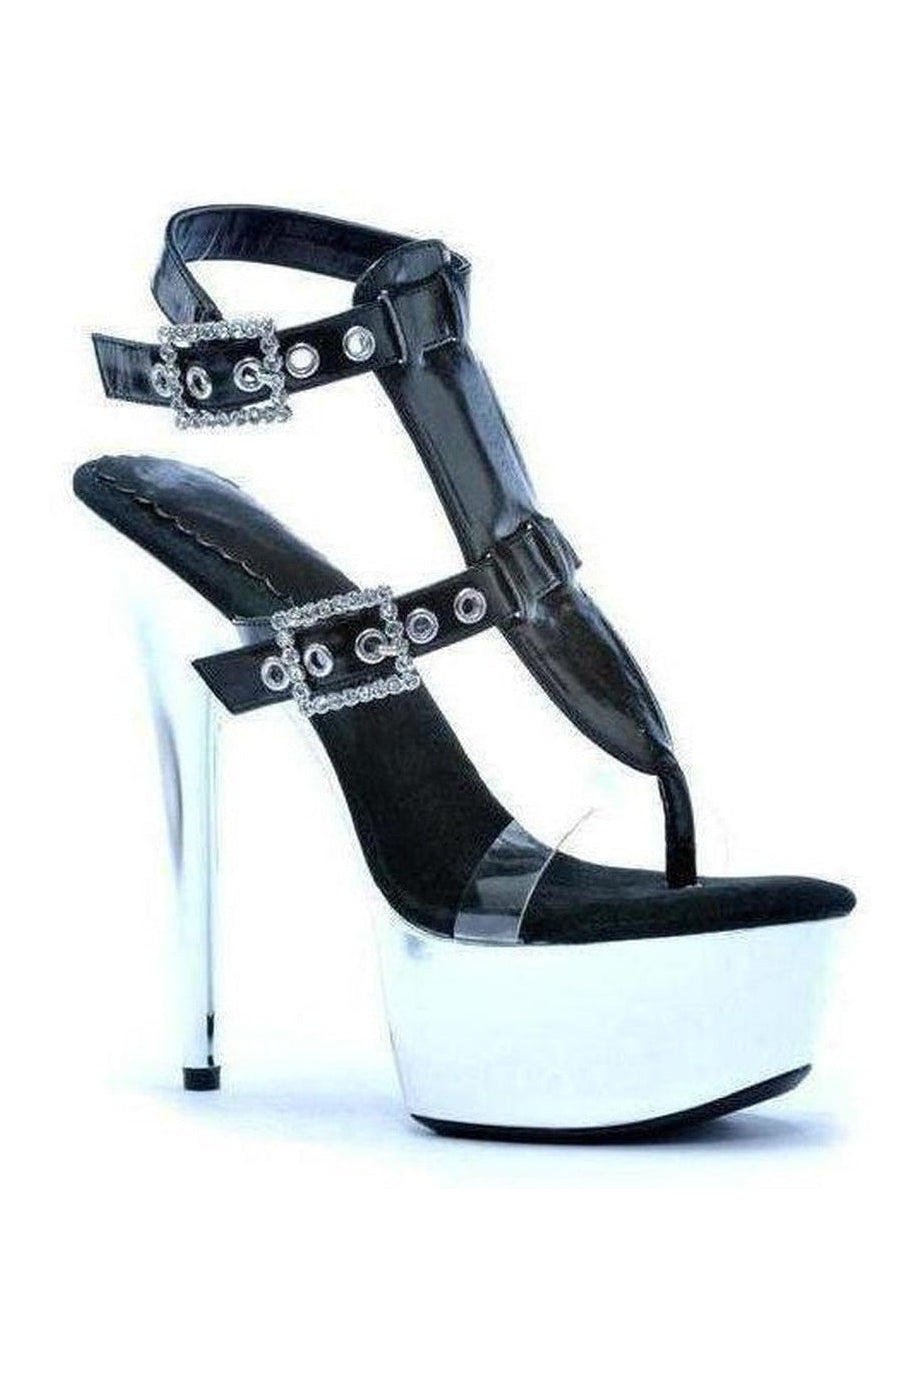 609-GENEVA Platform Sandal | Black Patent-Ellie Shoes-Black-Sandals-SEXYSHOES.COM